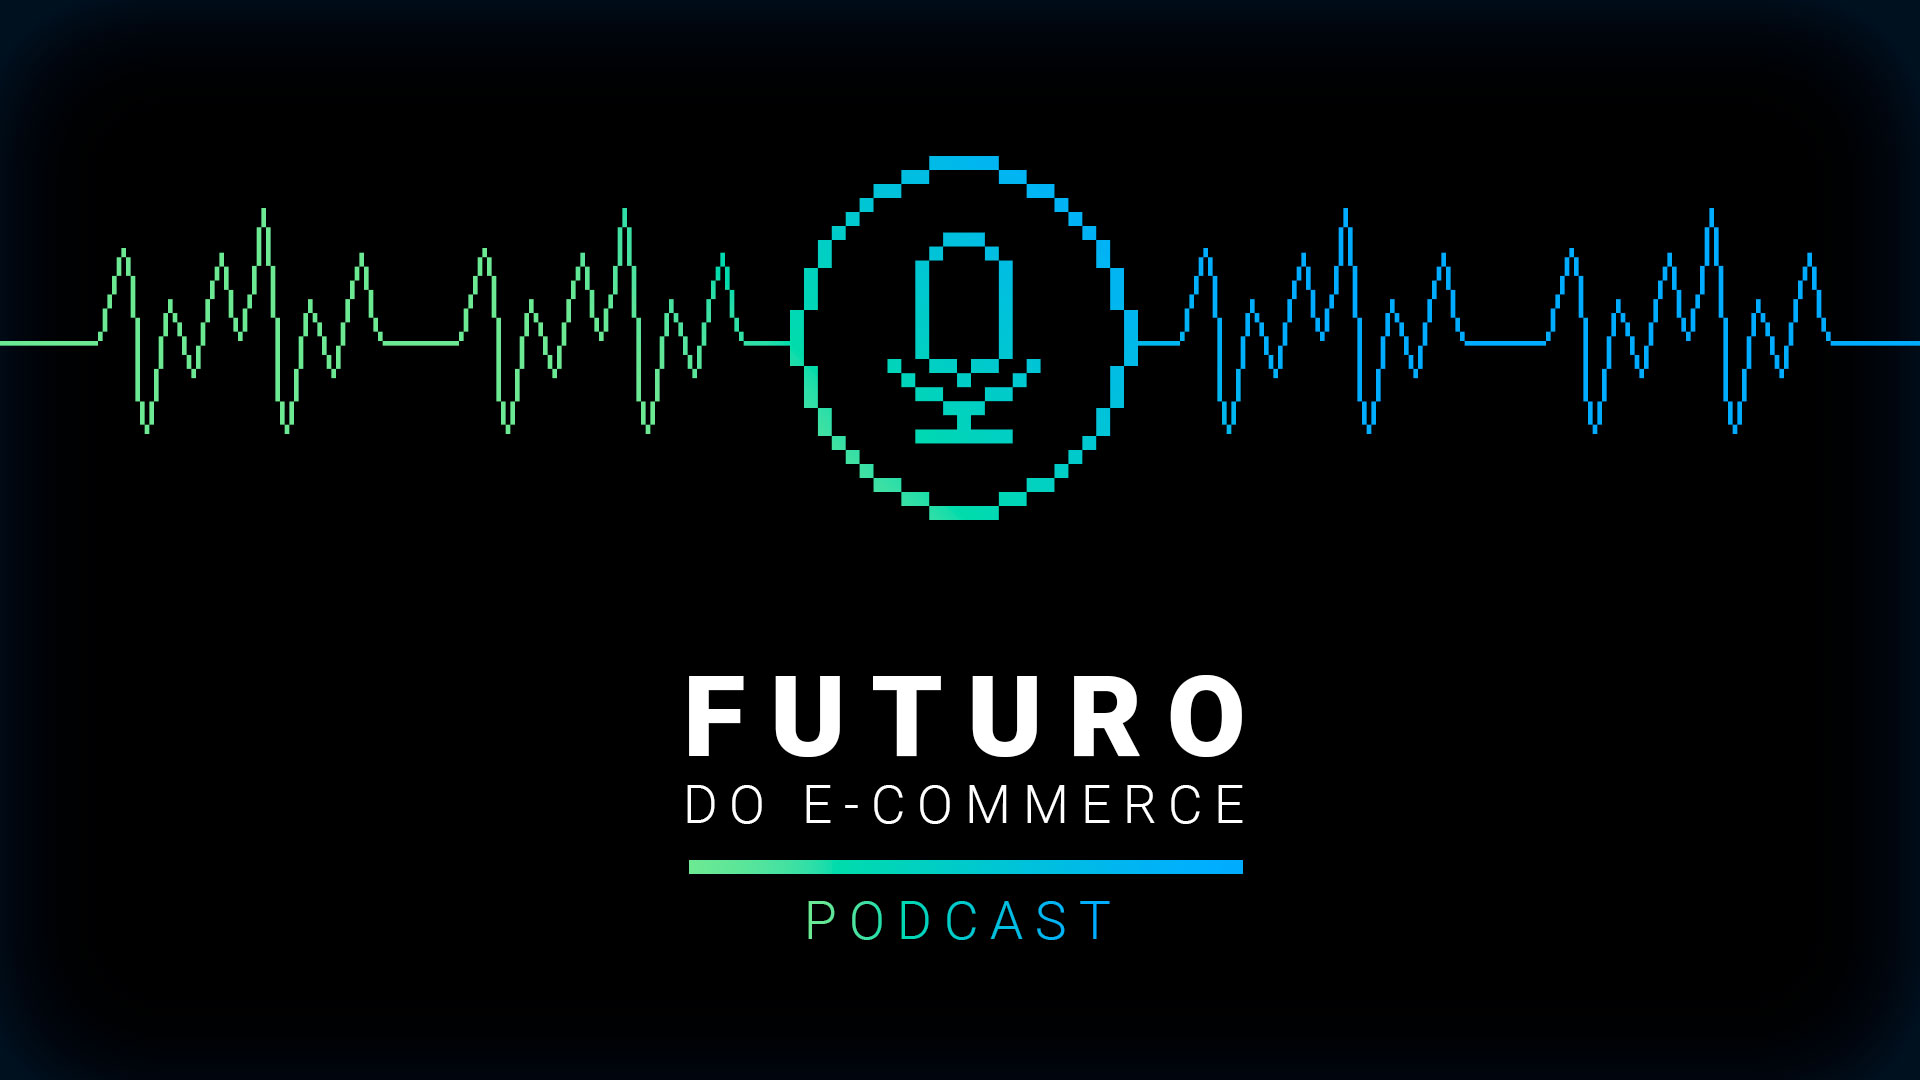 Podcast #02 Marketing de Influência para e-commerce: vale a pena?